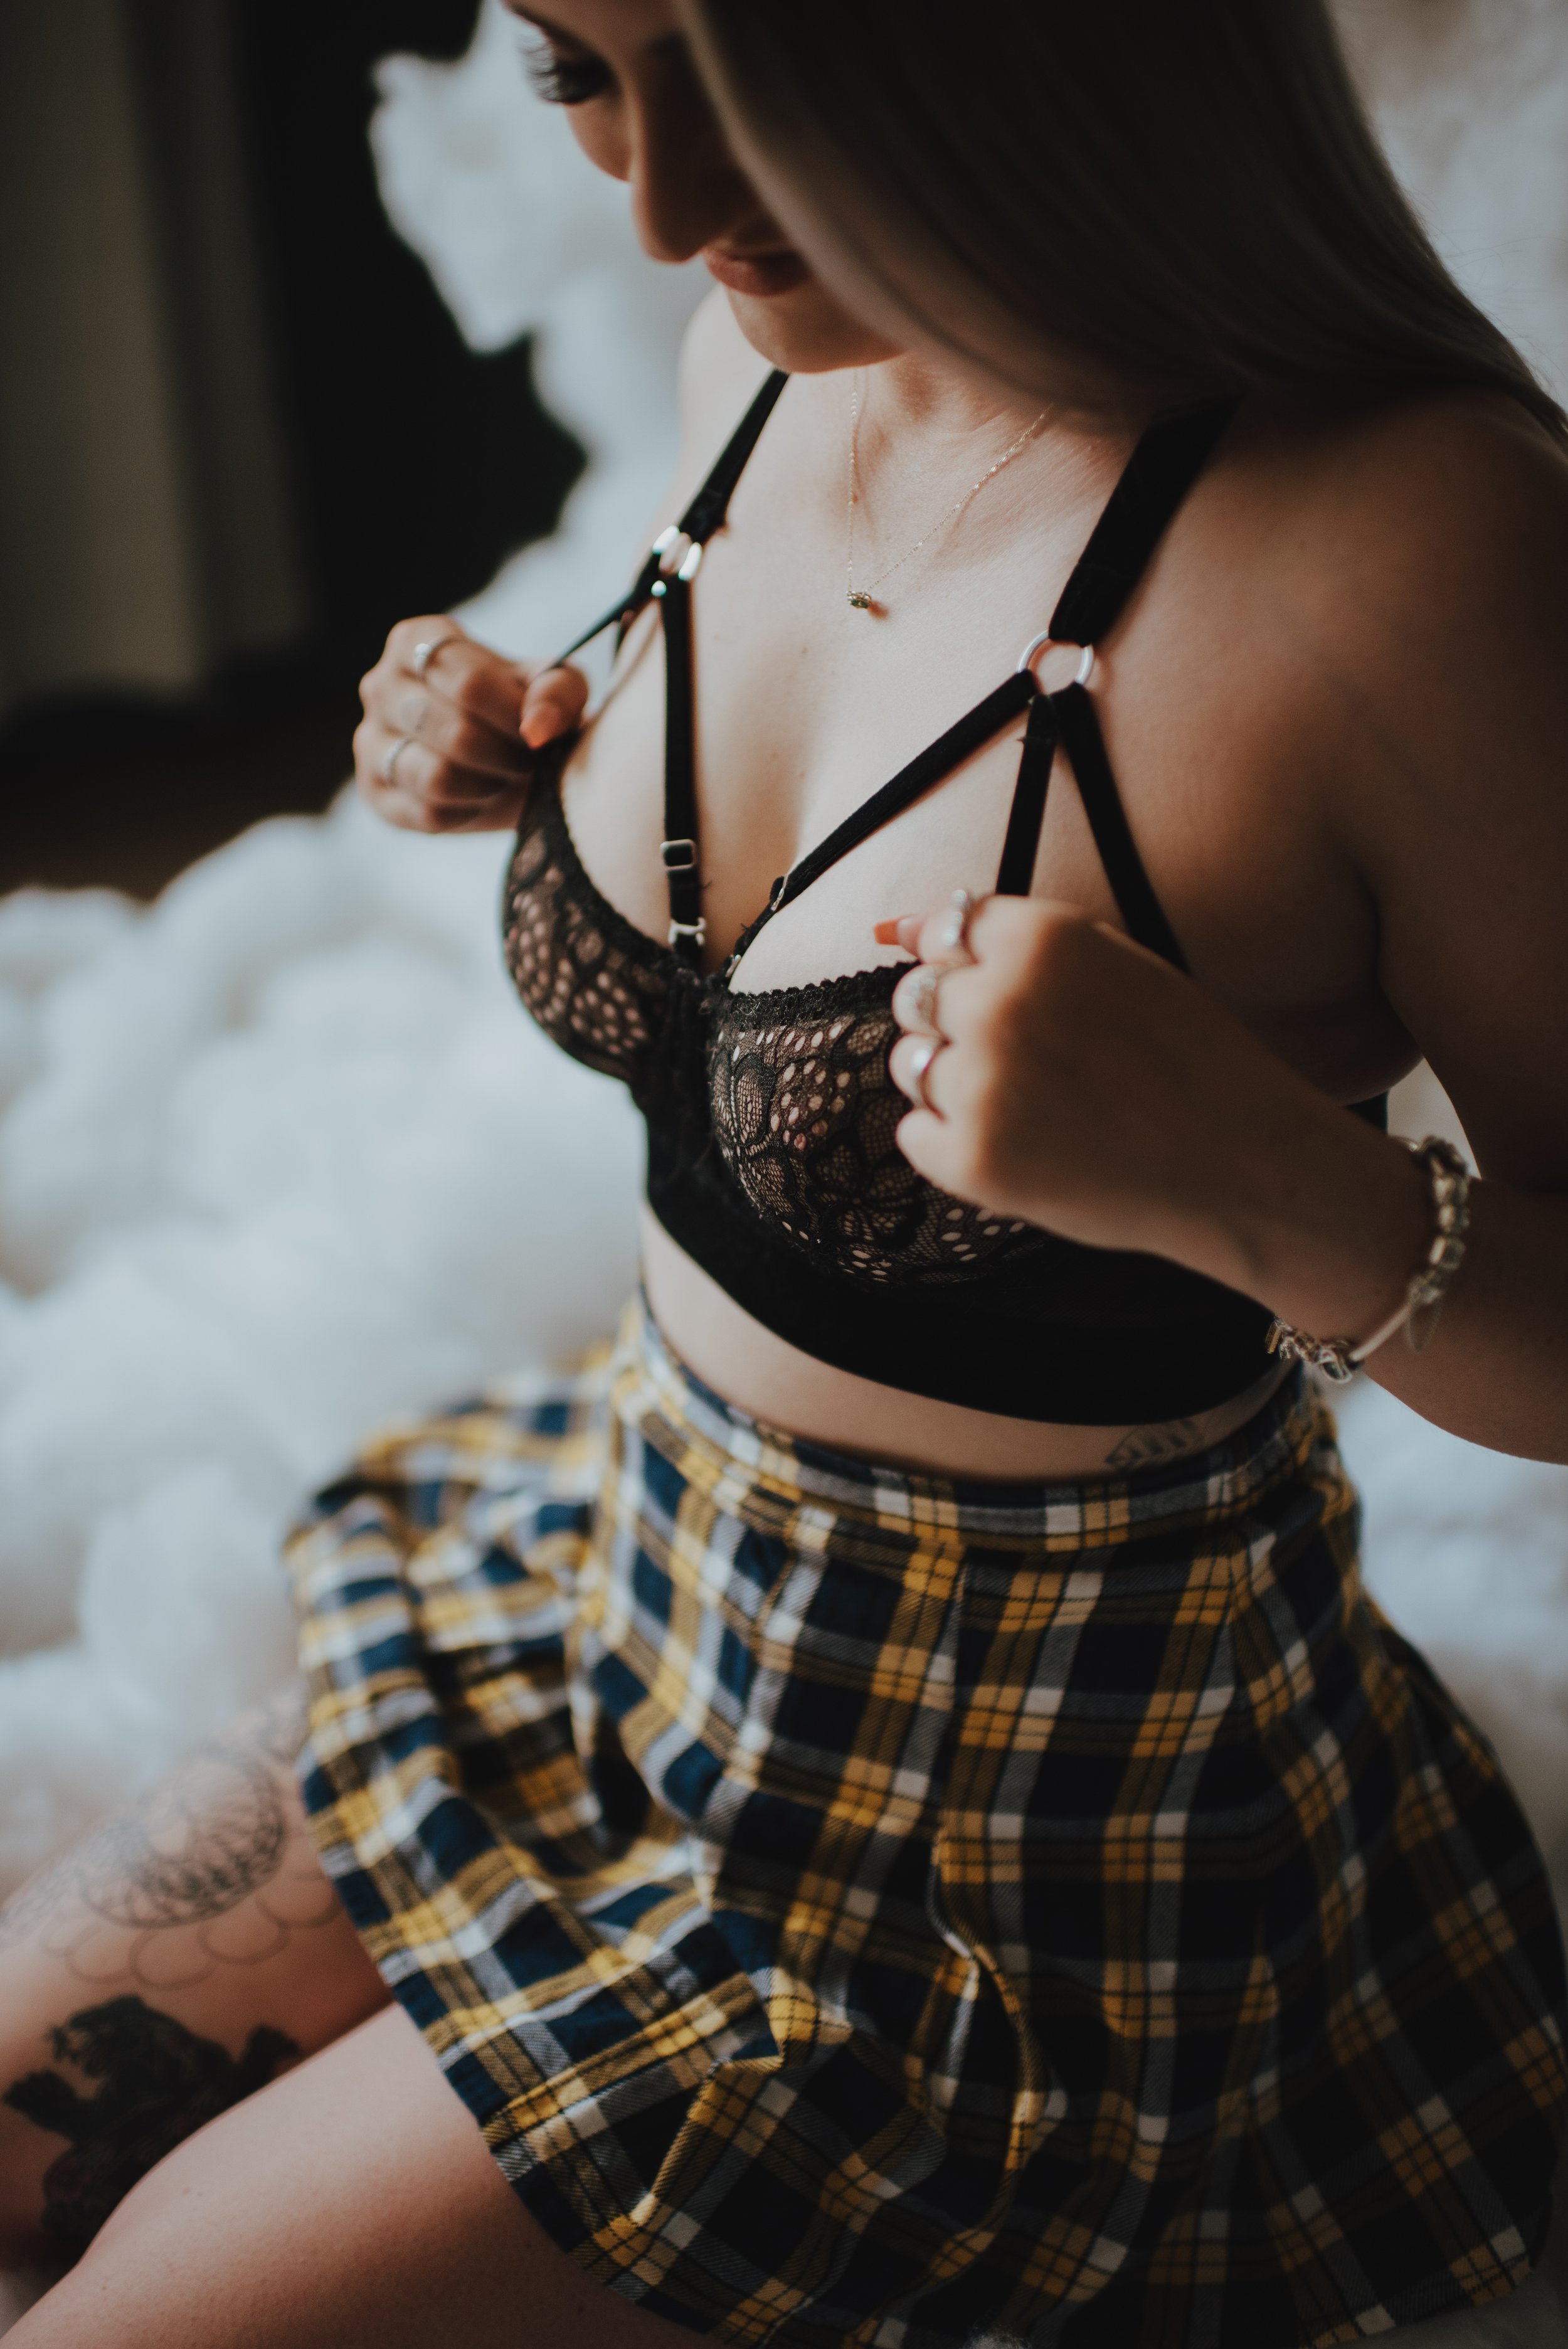 using underwear straps to make boobs look better in boudoir